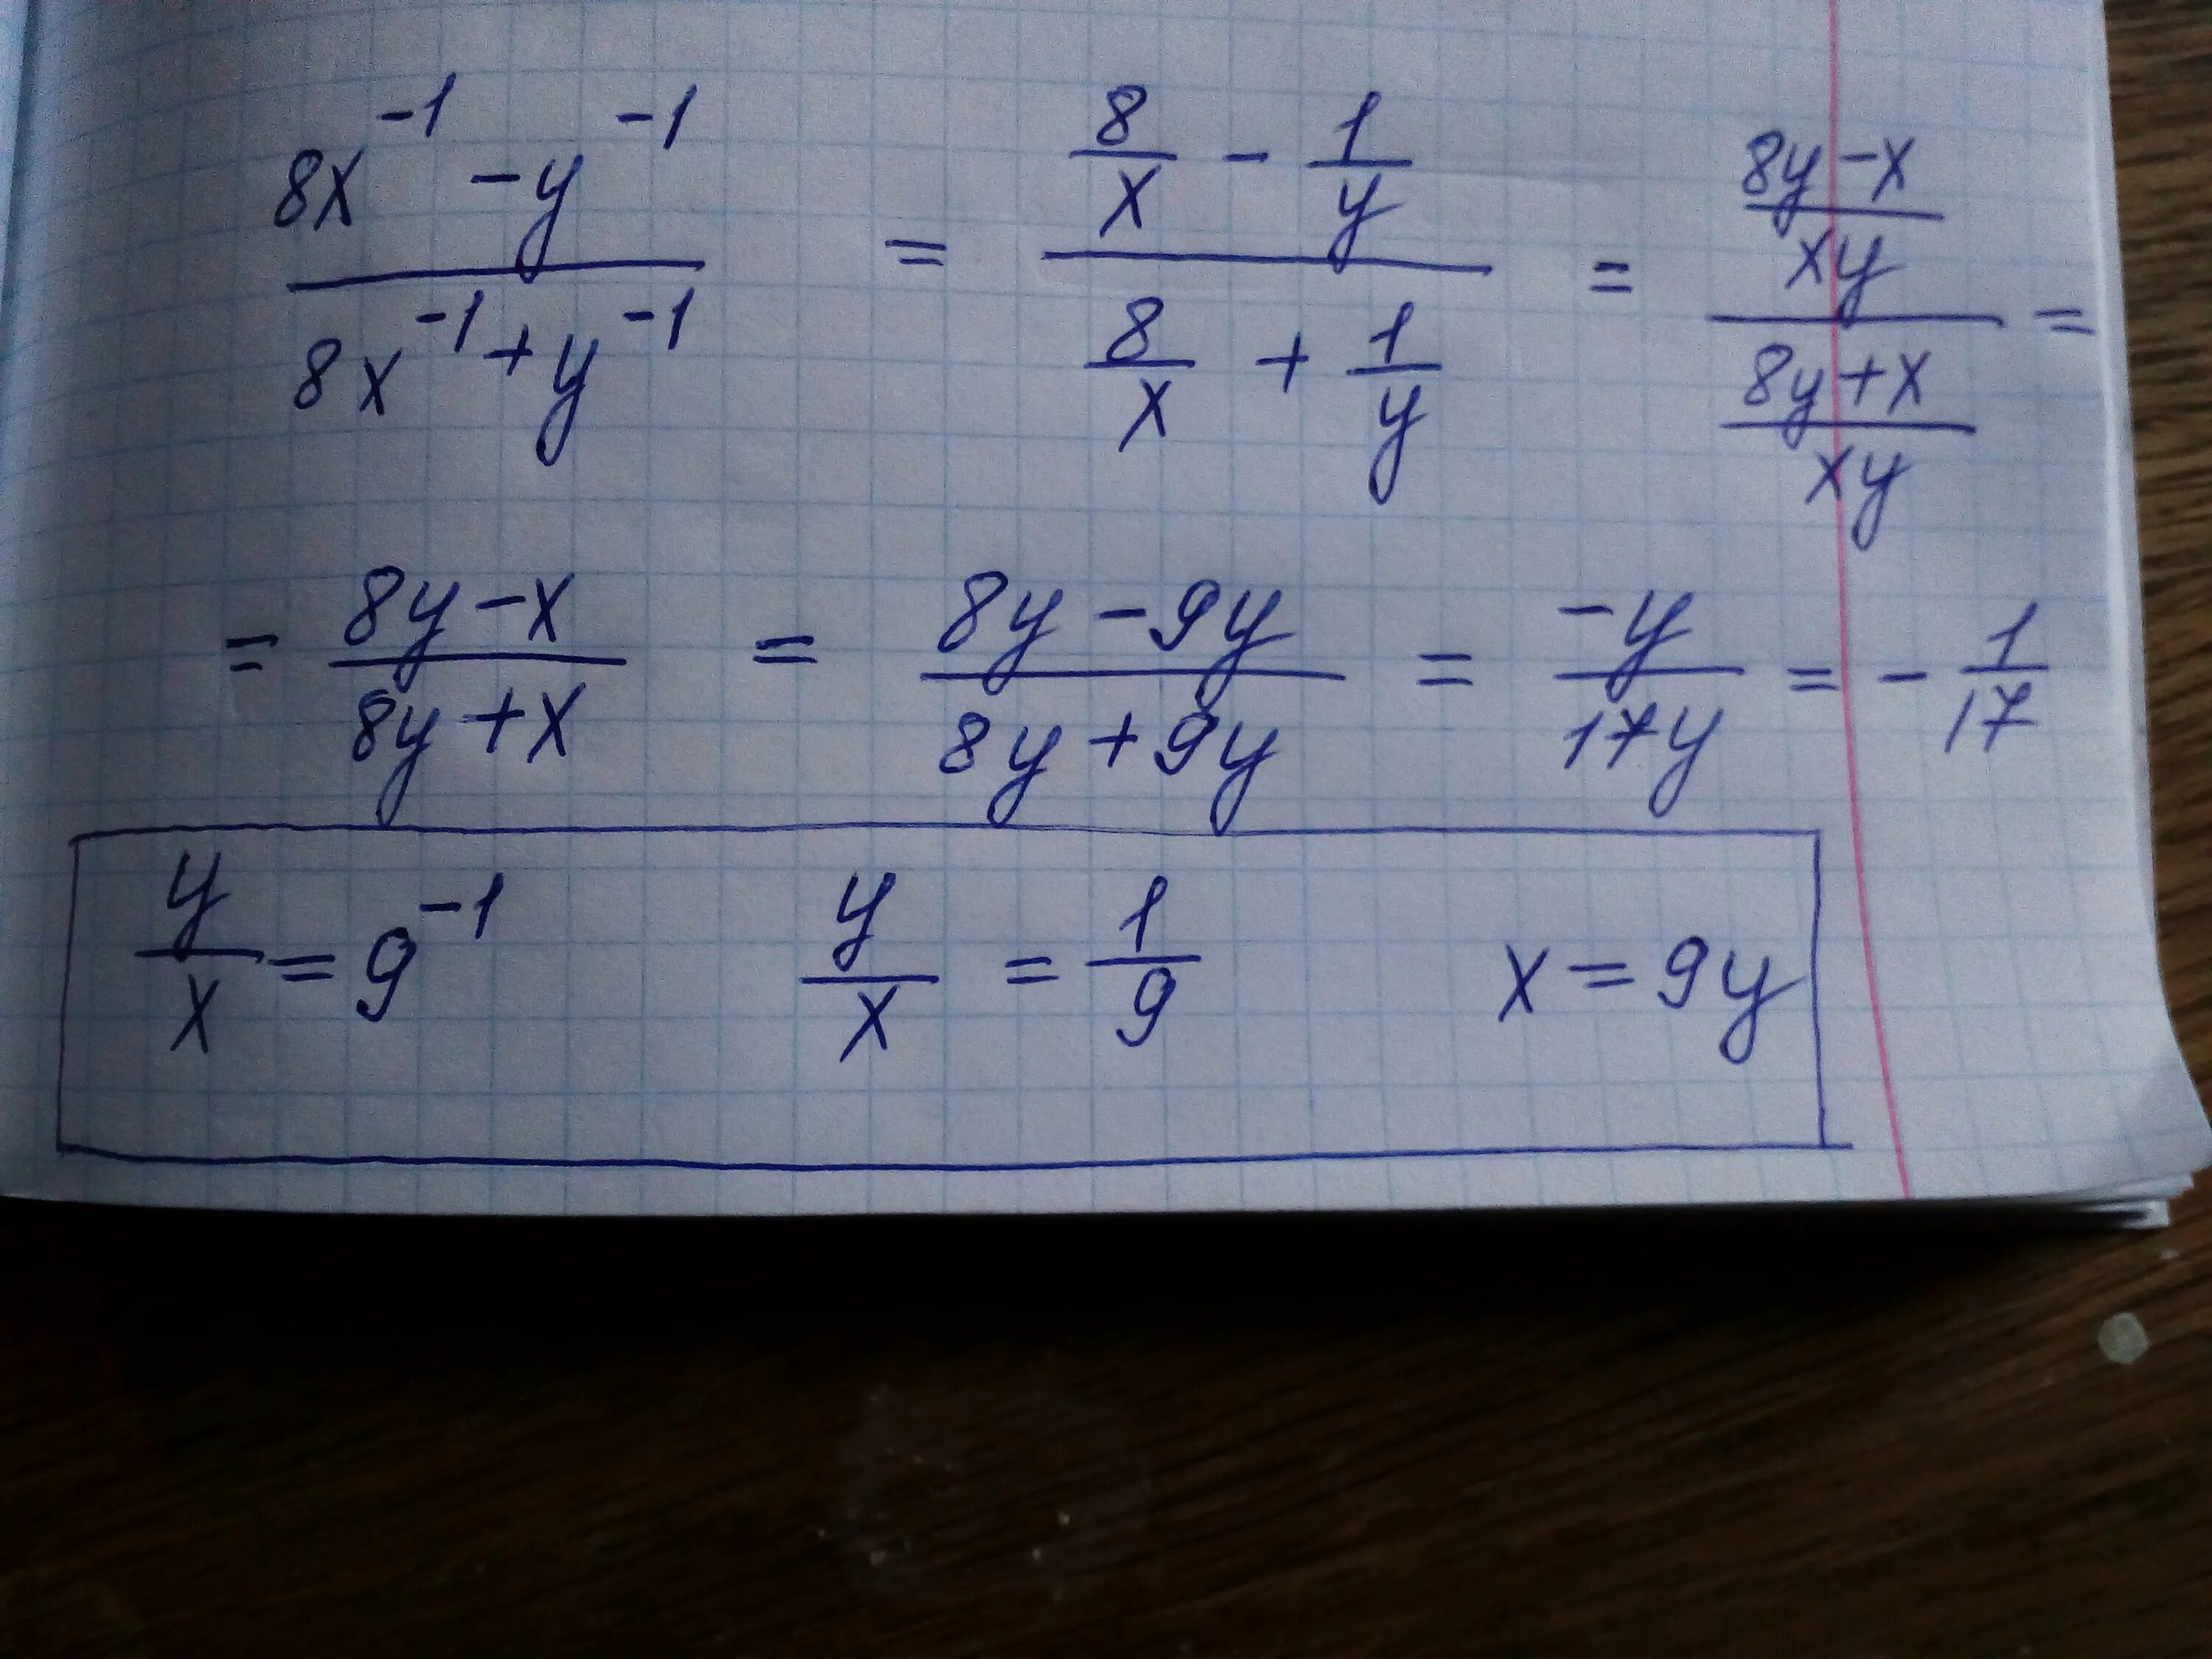 Y 1 8 13 3 5 7. 8x=1. (1/X-1/Y):(1/X+1/Y). Y=-1/8x. A1 8x1.